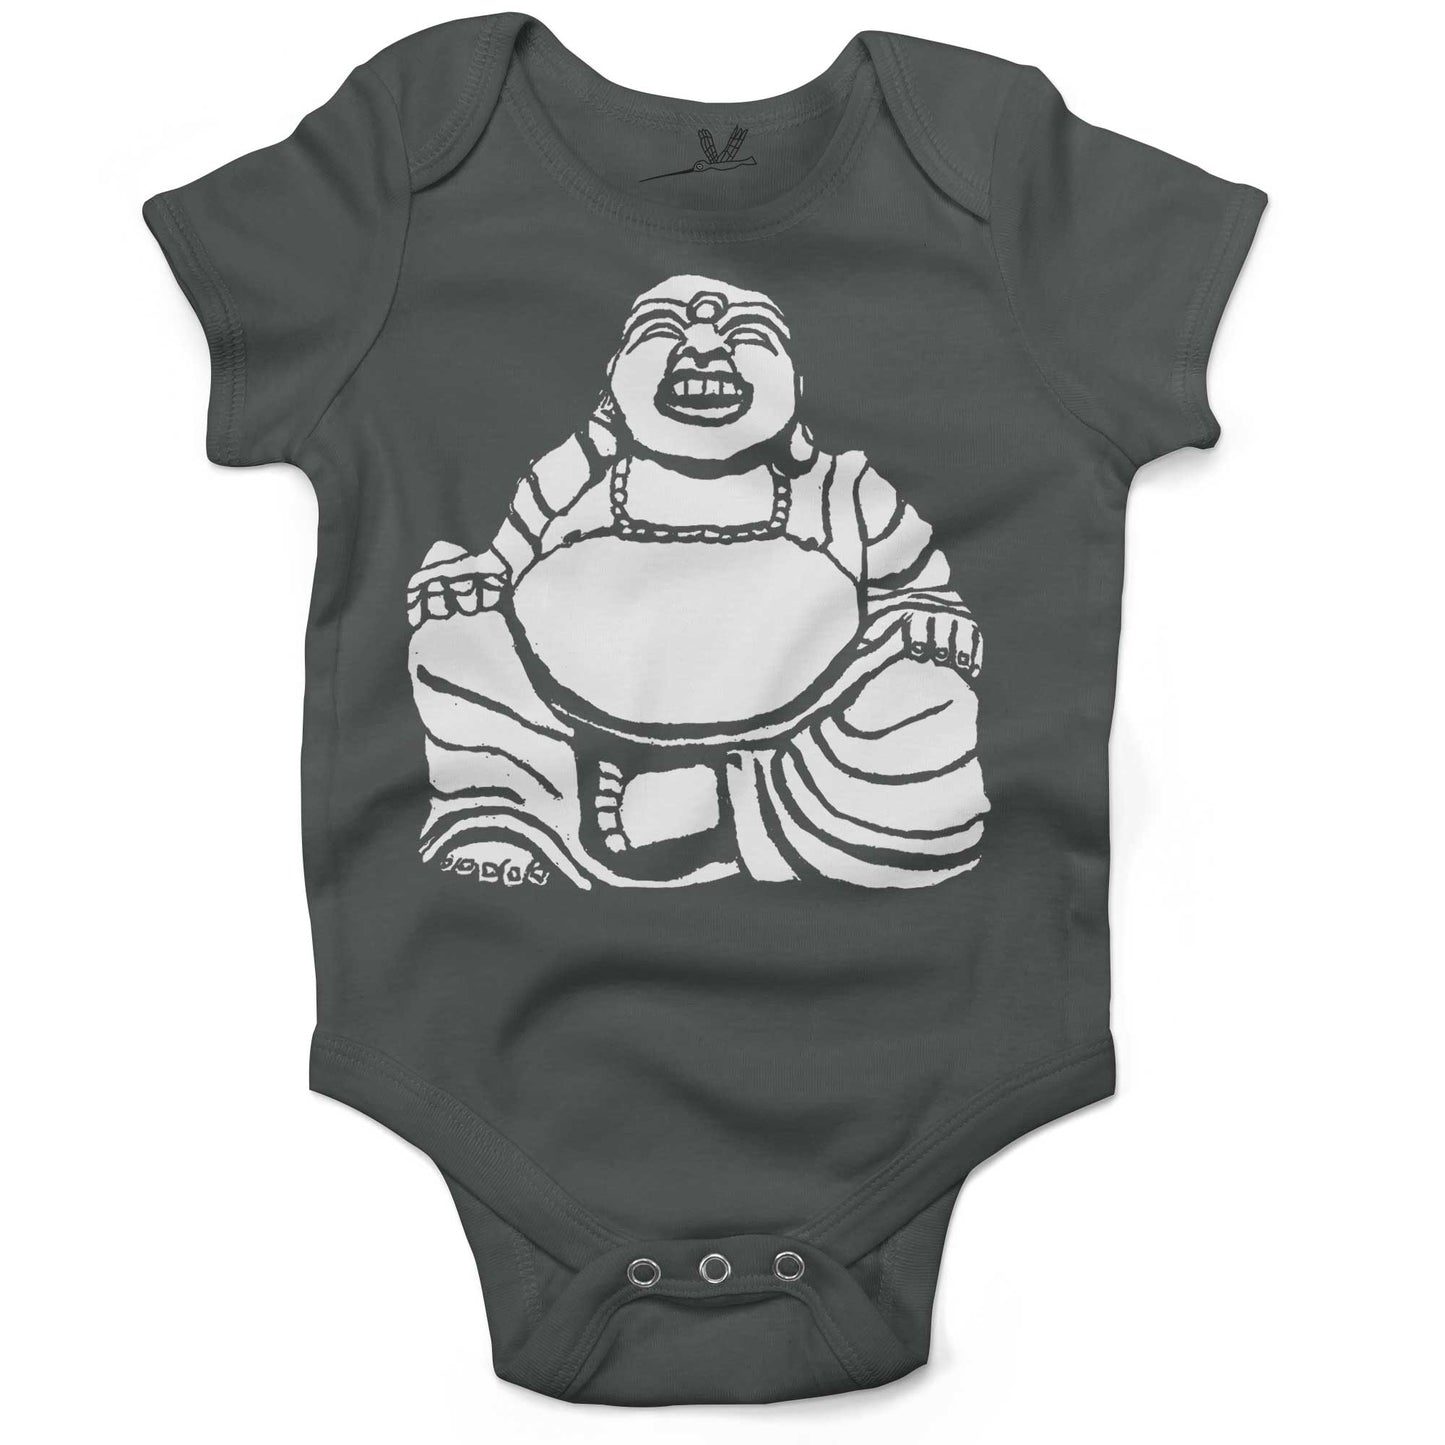 Laughing Buddha Infant Bodysuit or Raglan Baby Tee-Organic Asphalt-3-6 months